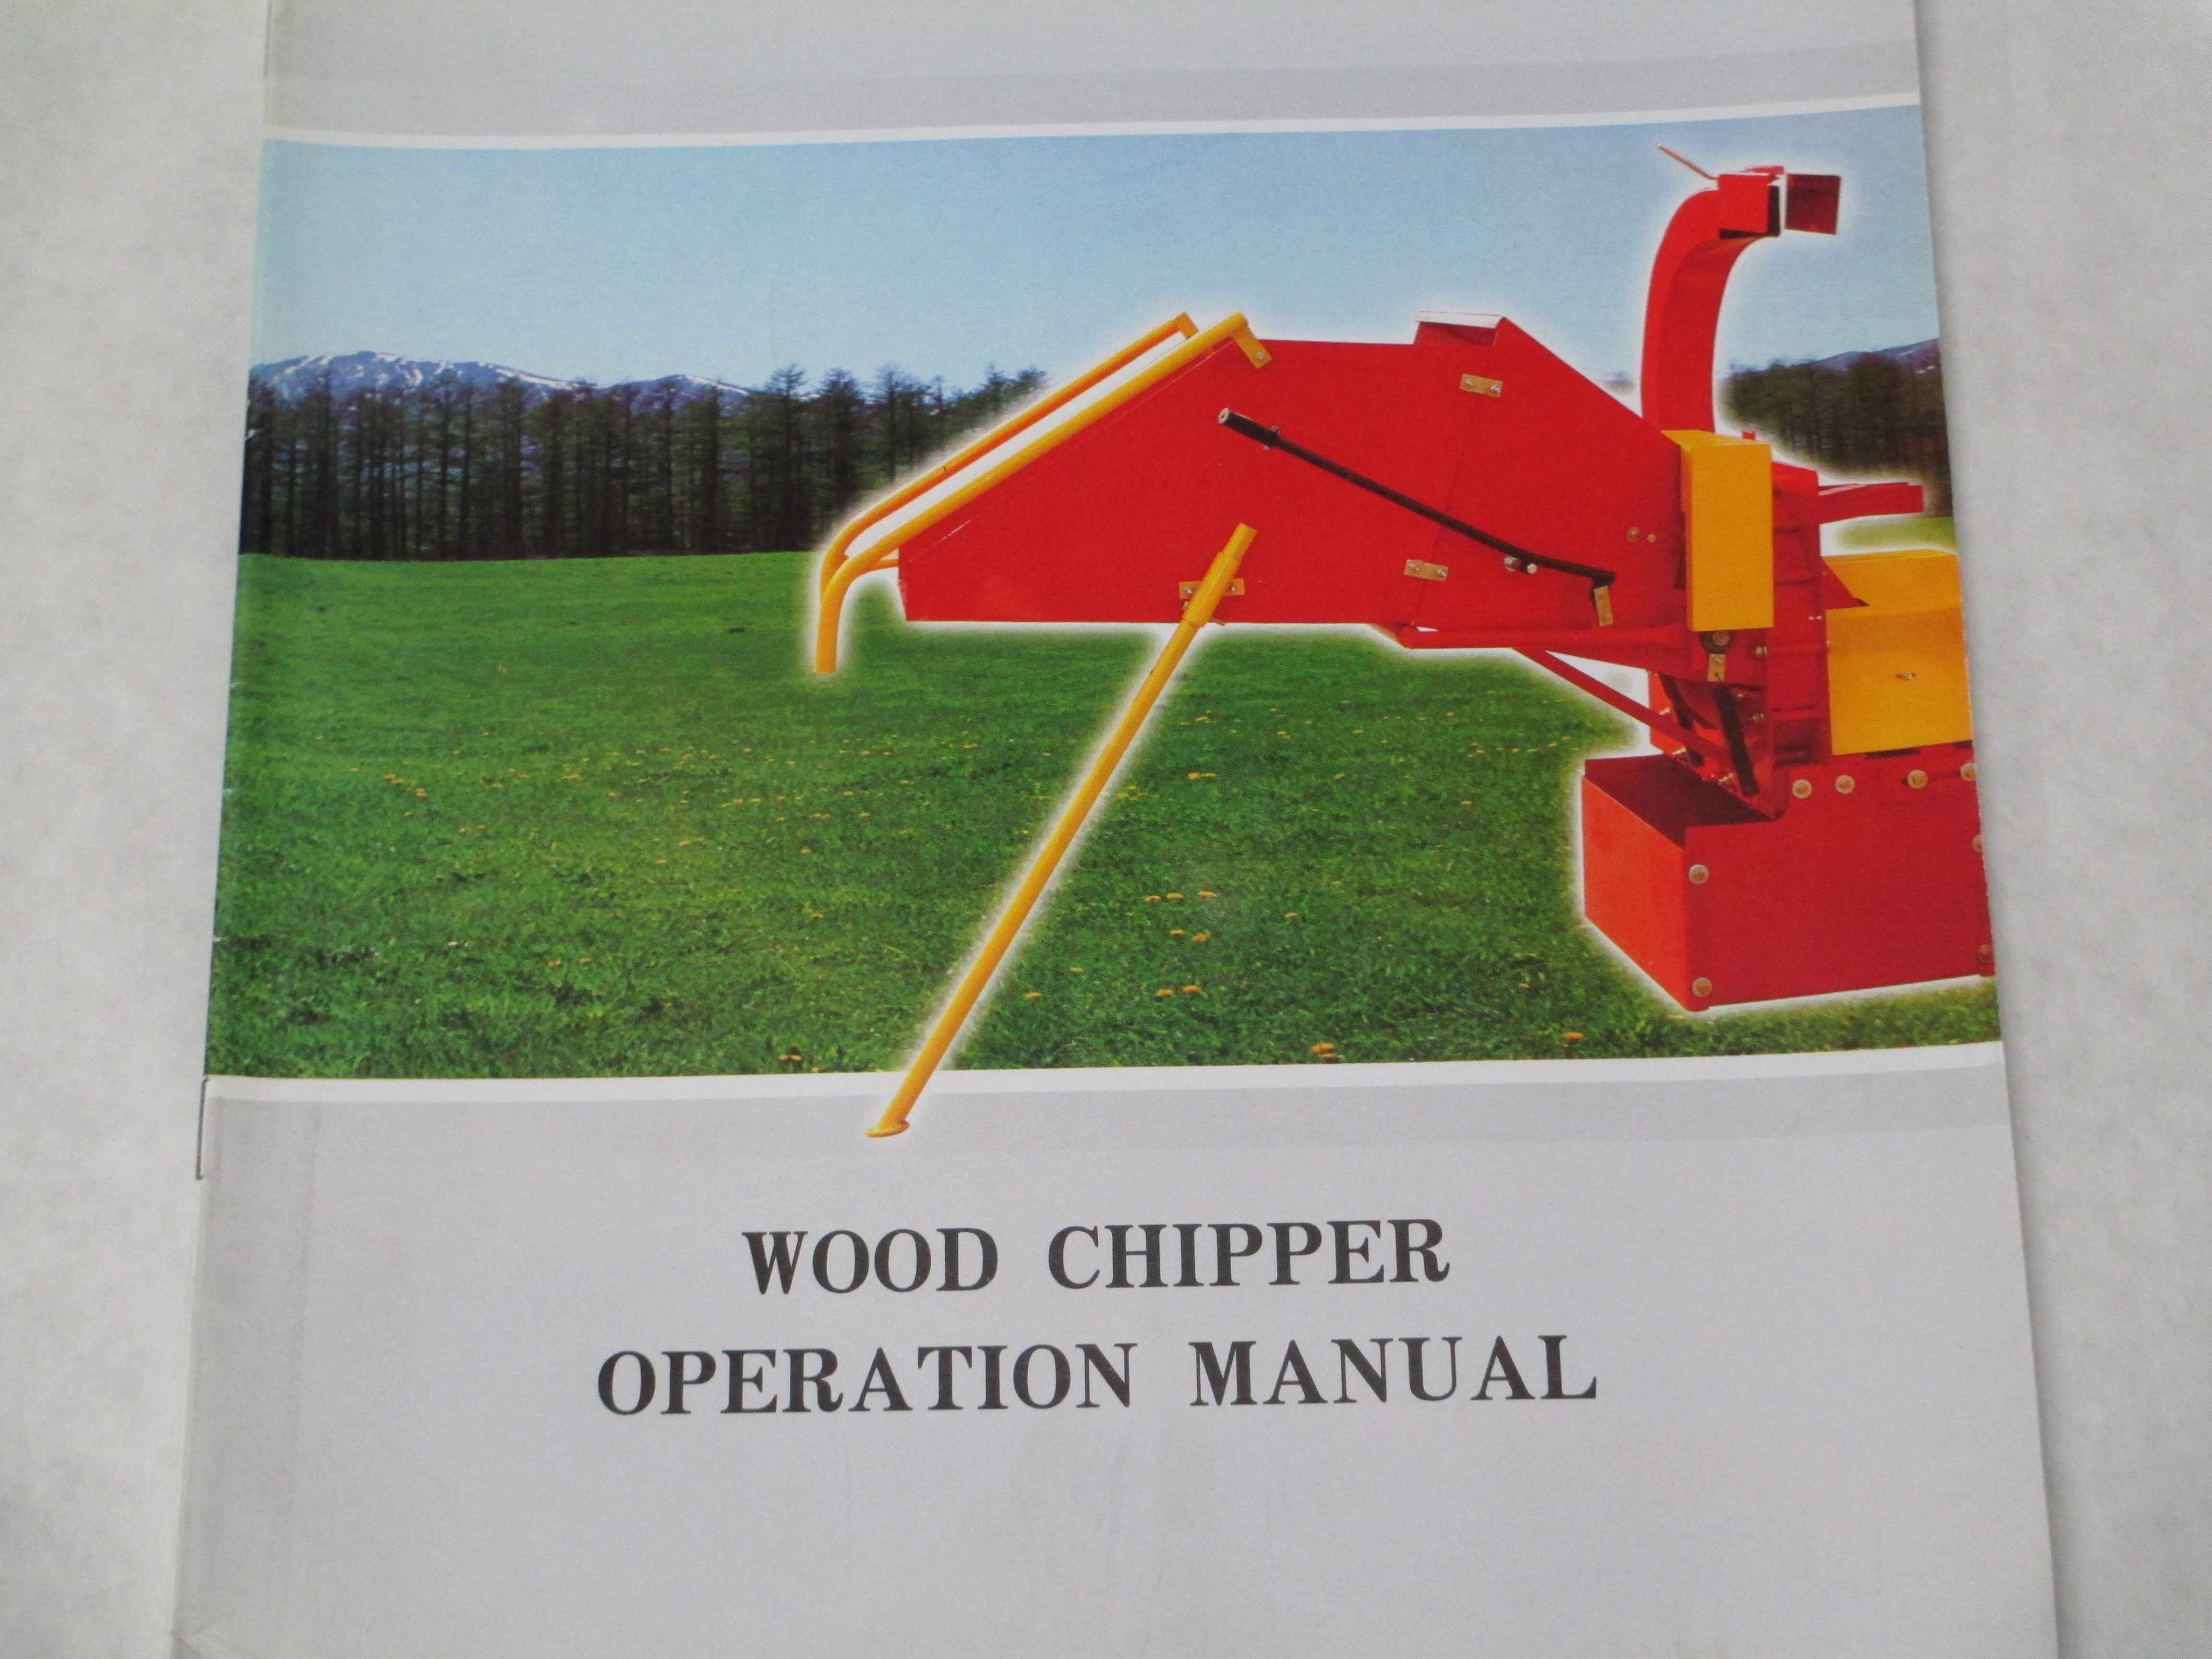 Jinma chipper owners manual john deere